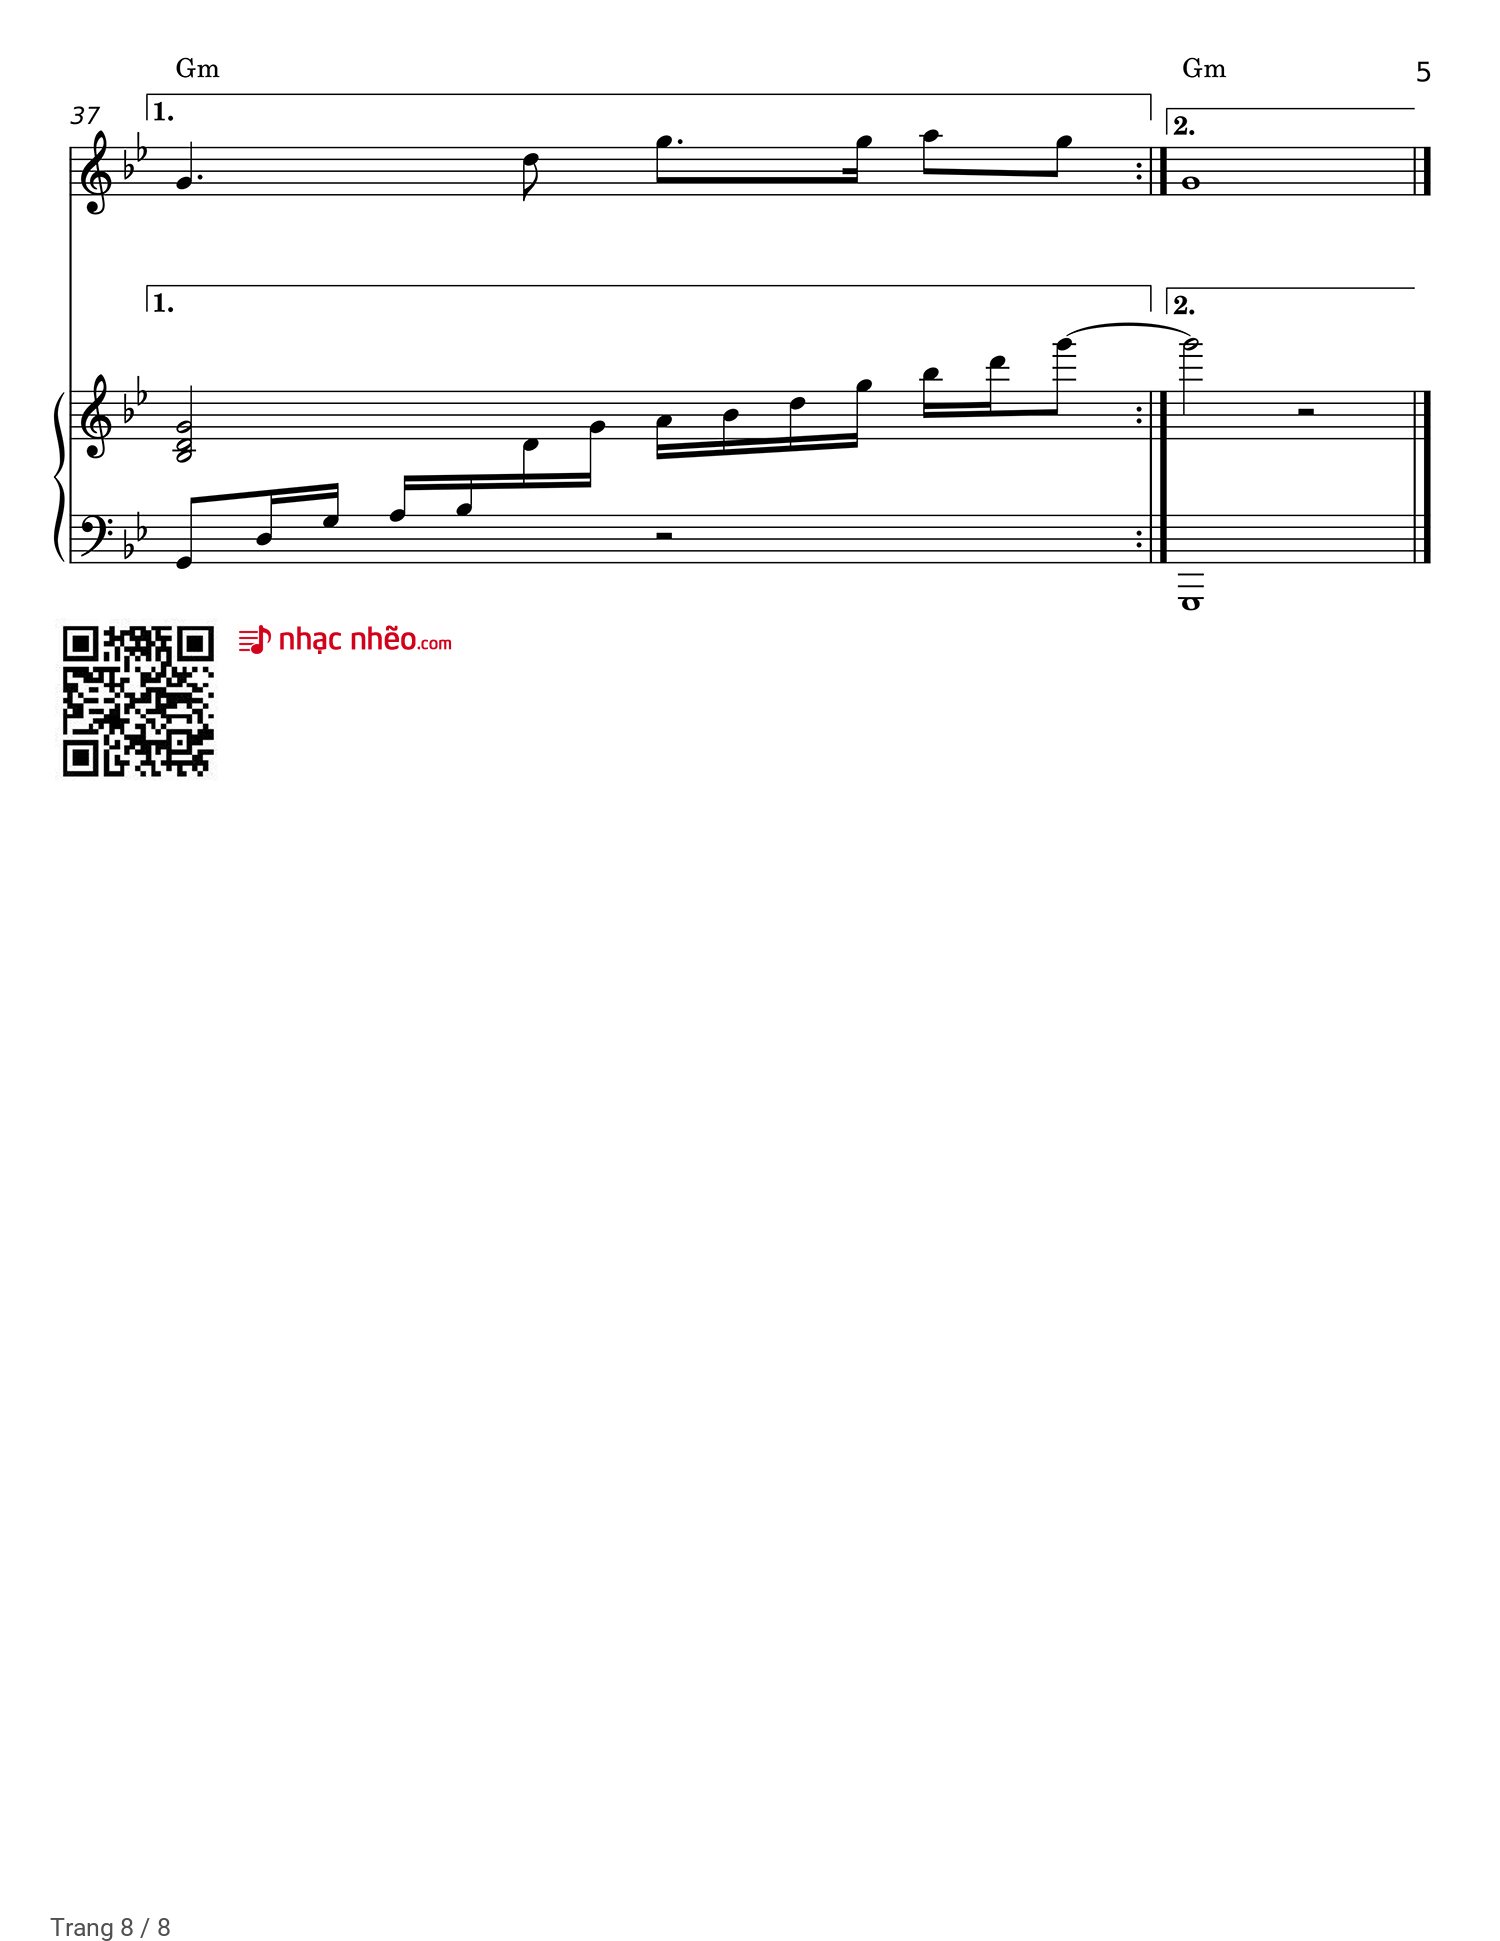 Trang 8 của Sheet nhạc PDF Piano bài hát Mẹ tôi - Trần Tiến